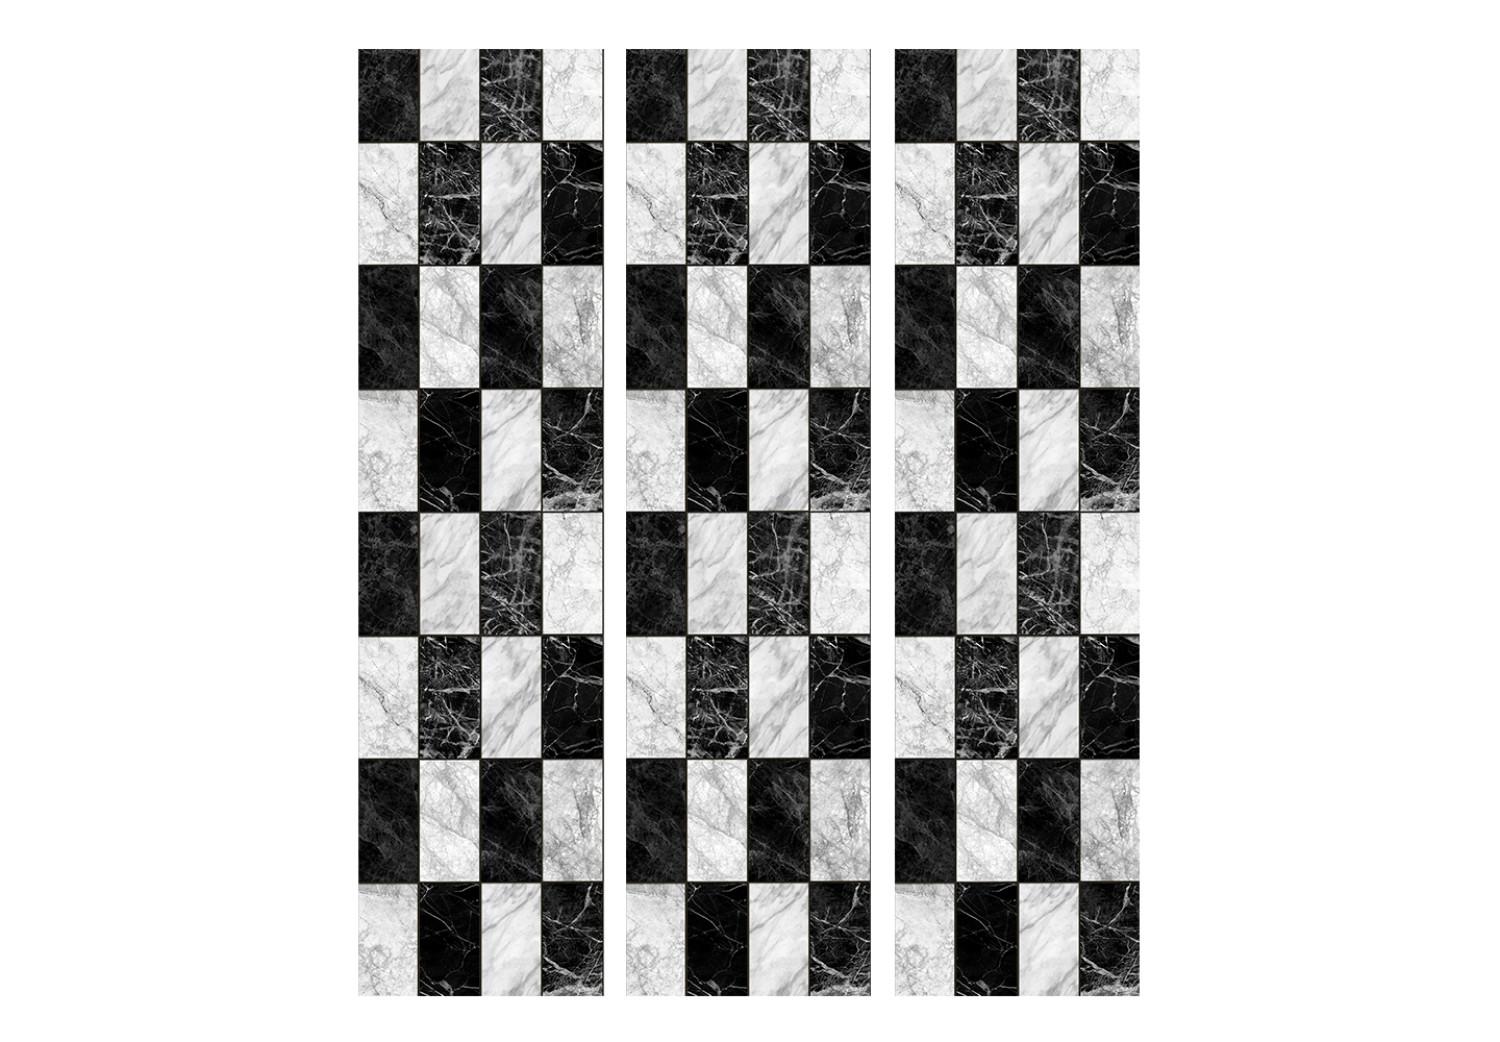 Biombo barato Tablero de ajedrez (3 partes): patrón geométrico en mármol